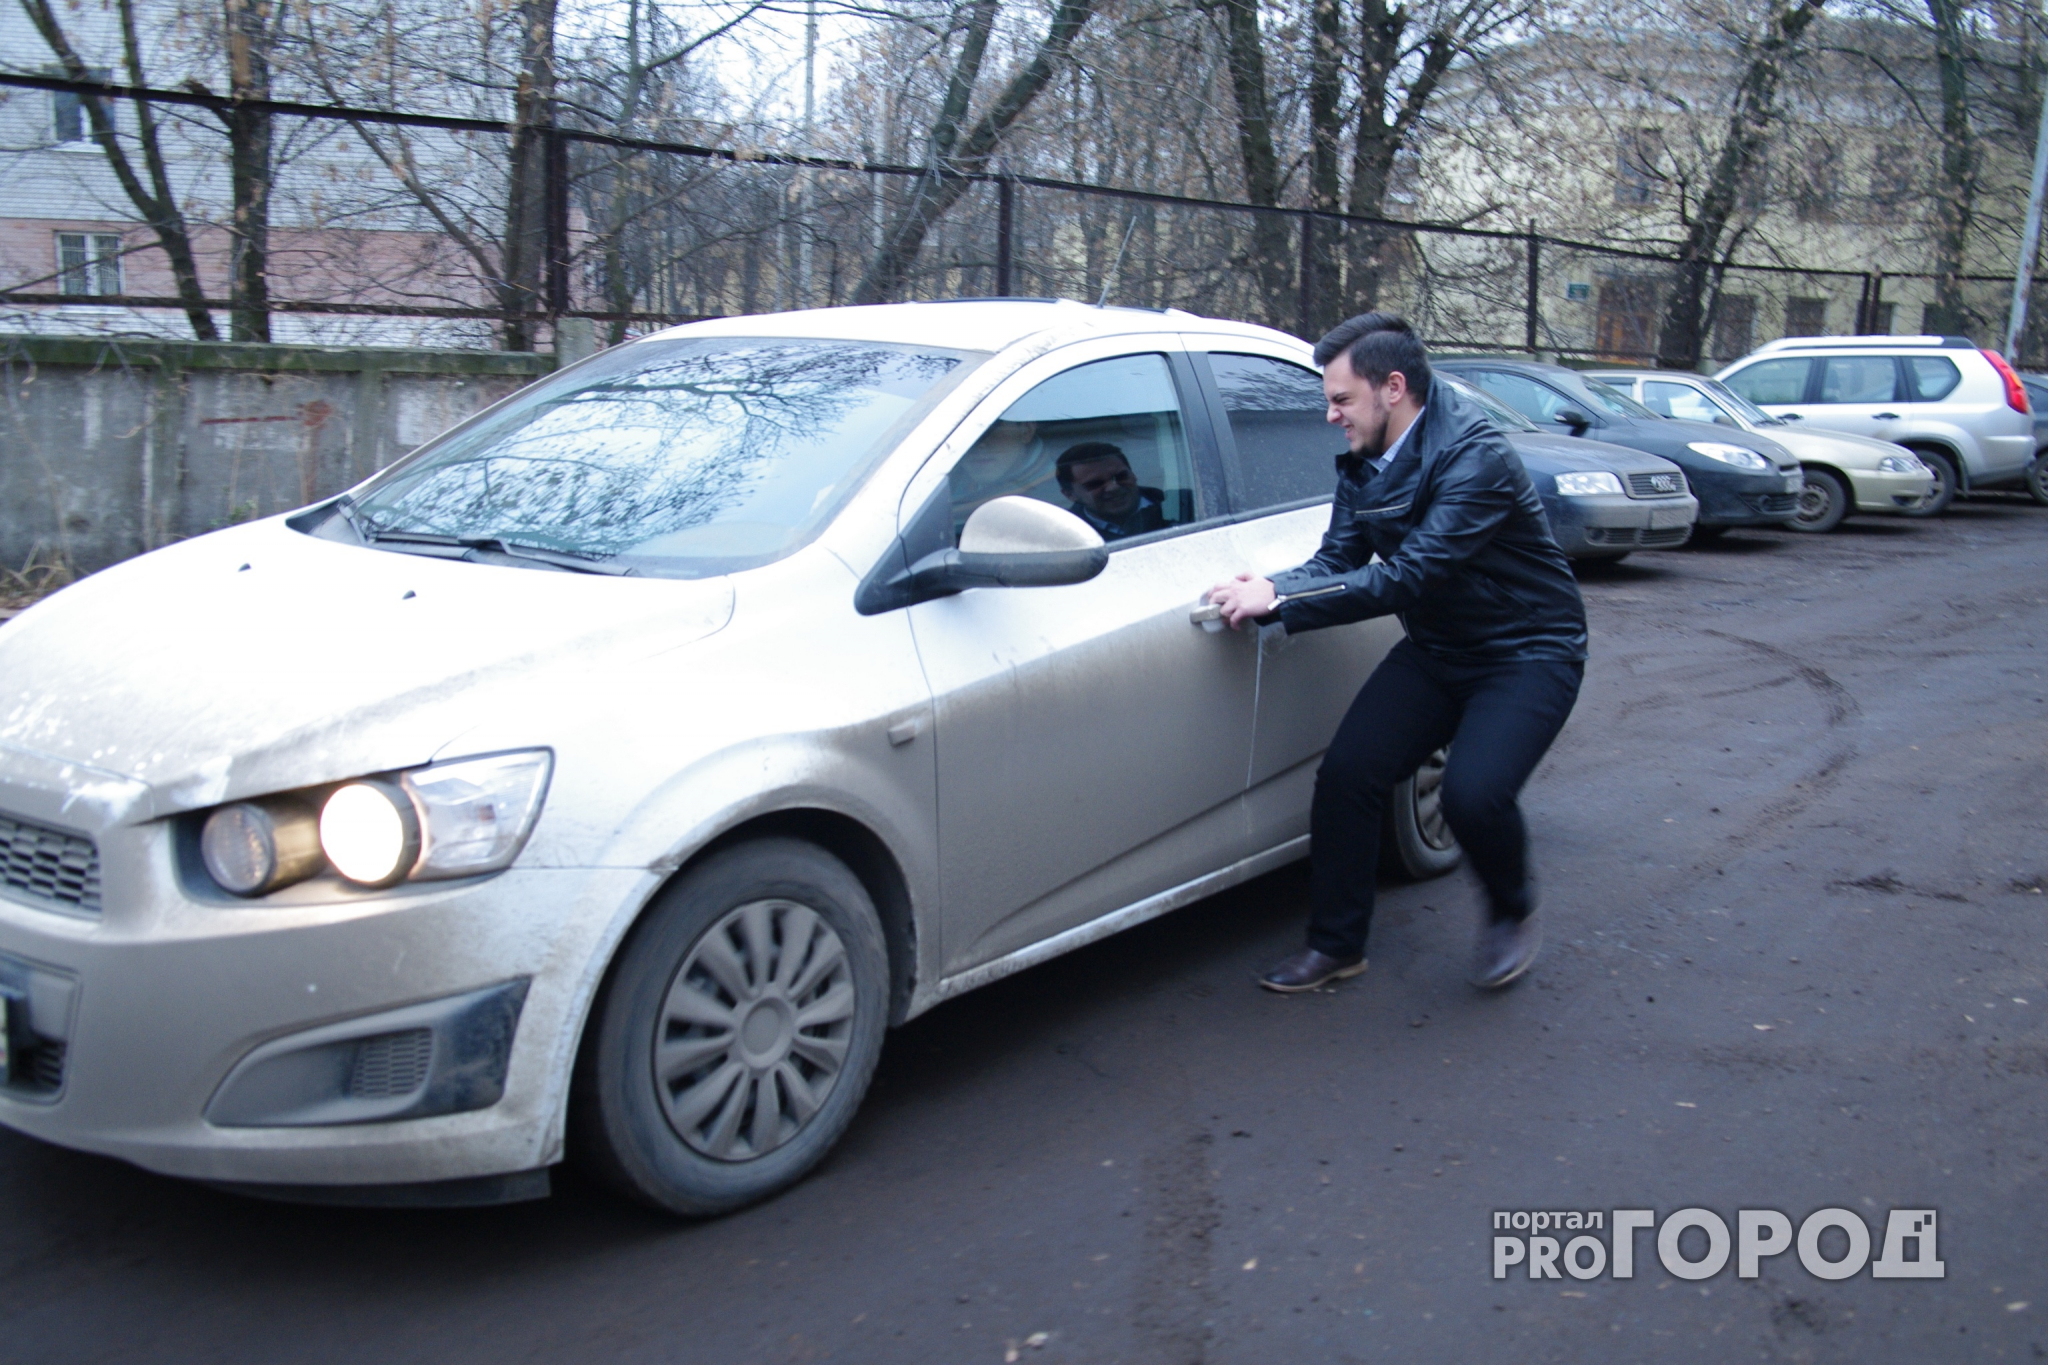 Появился рейтинг самых угоняемых автомобилей в России